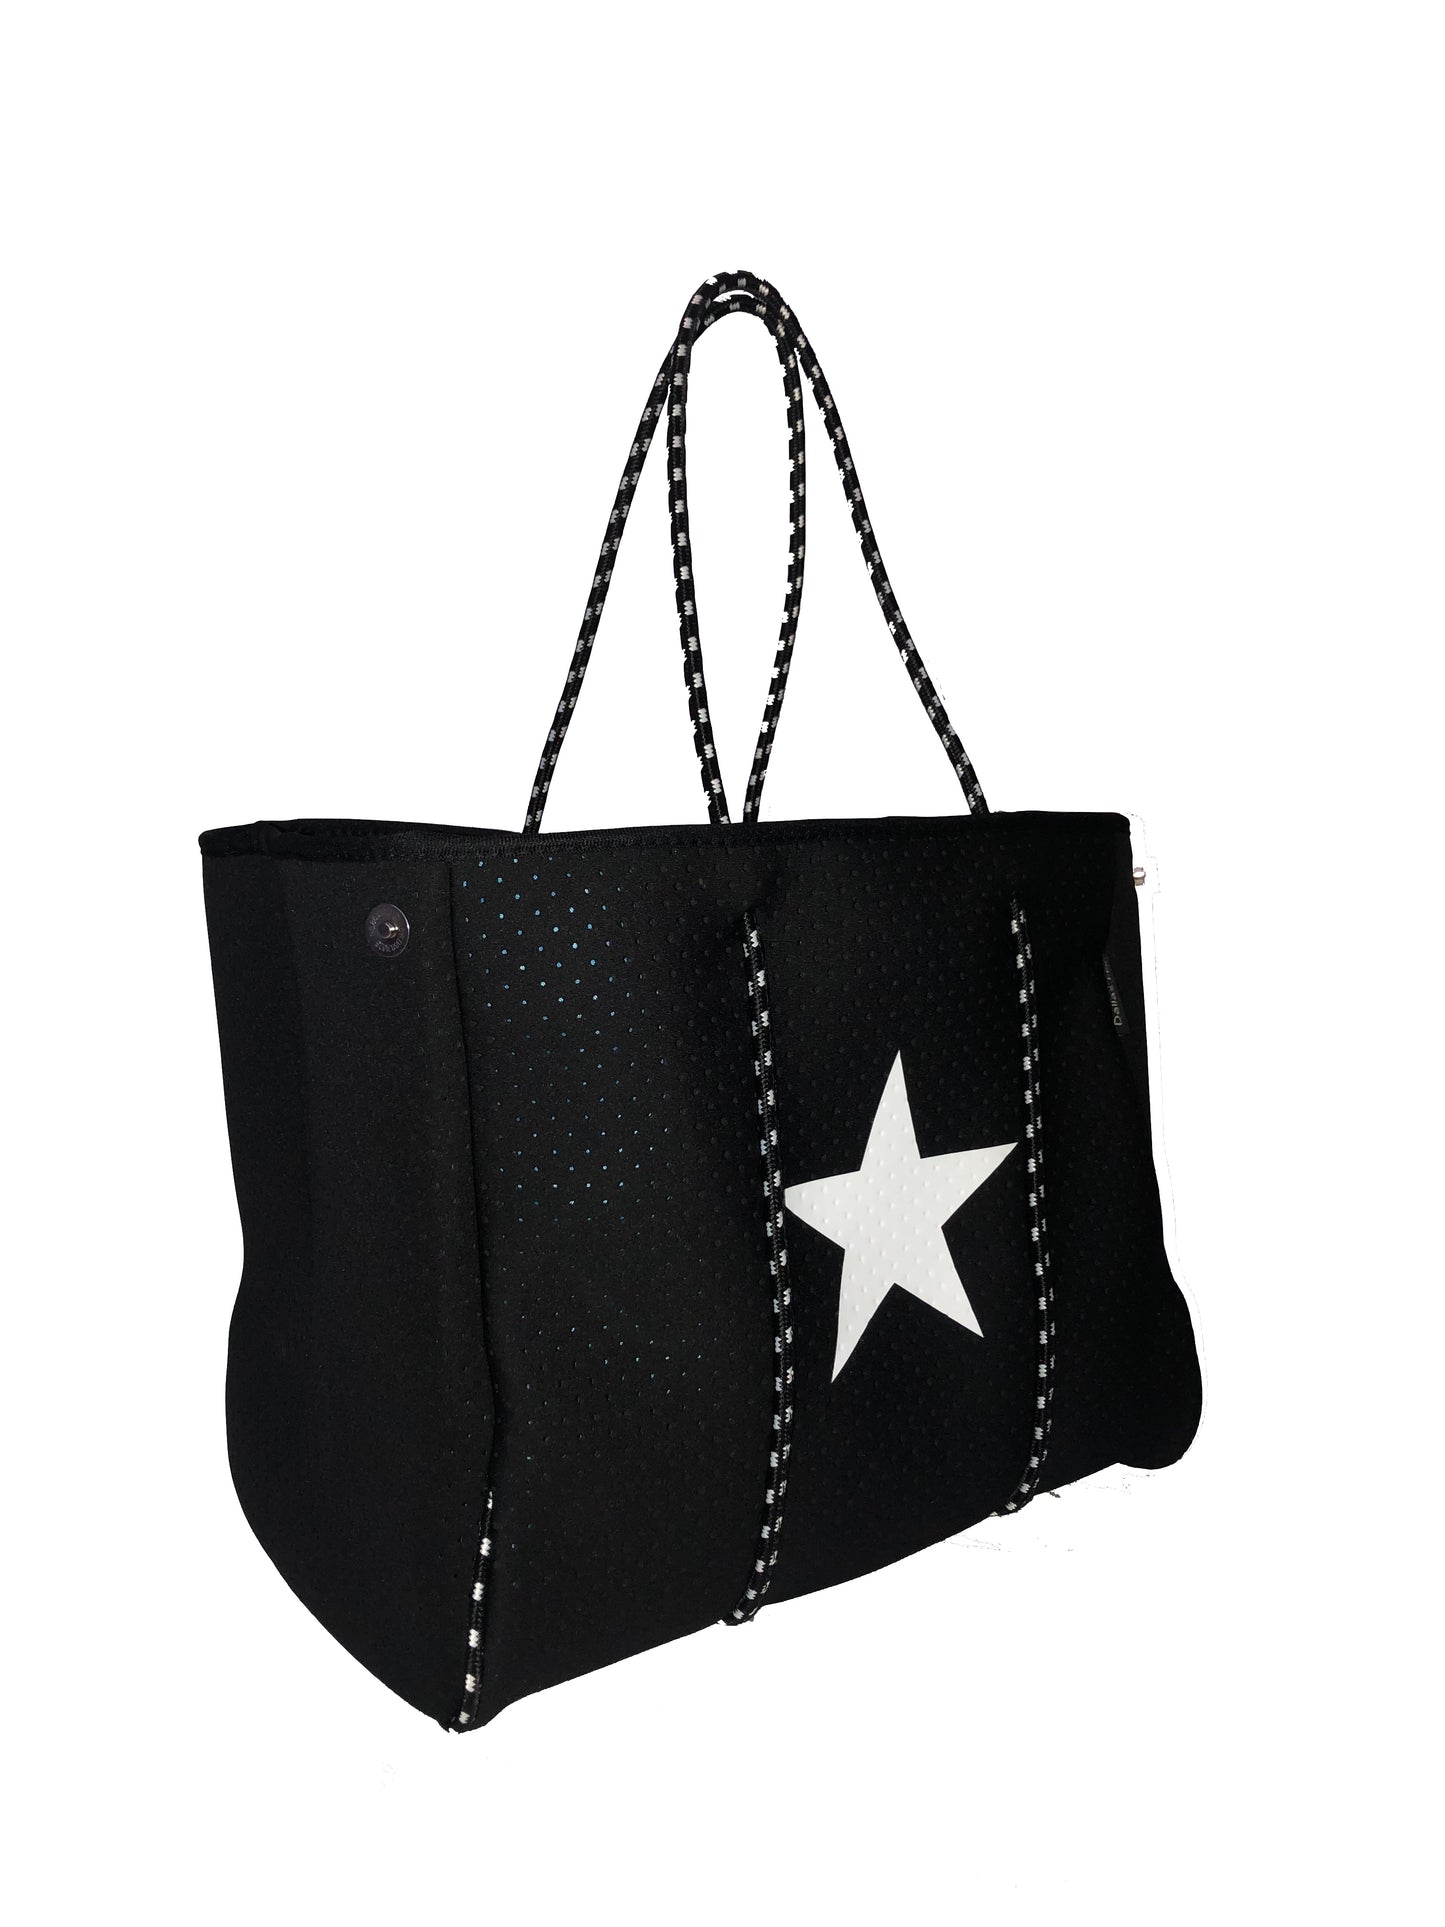 Neoprene Tote Bag Black White Star by Dallas Hill Design